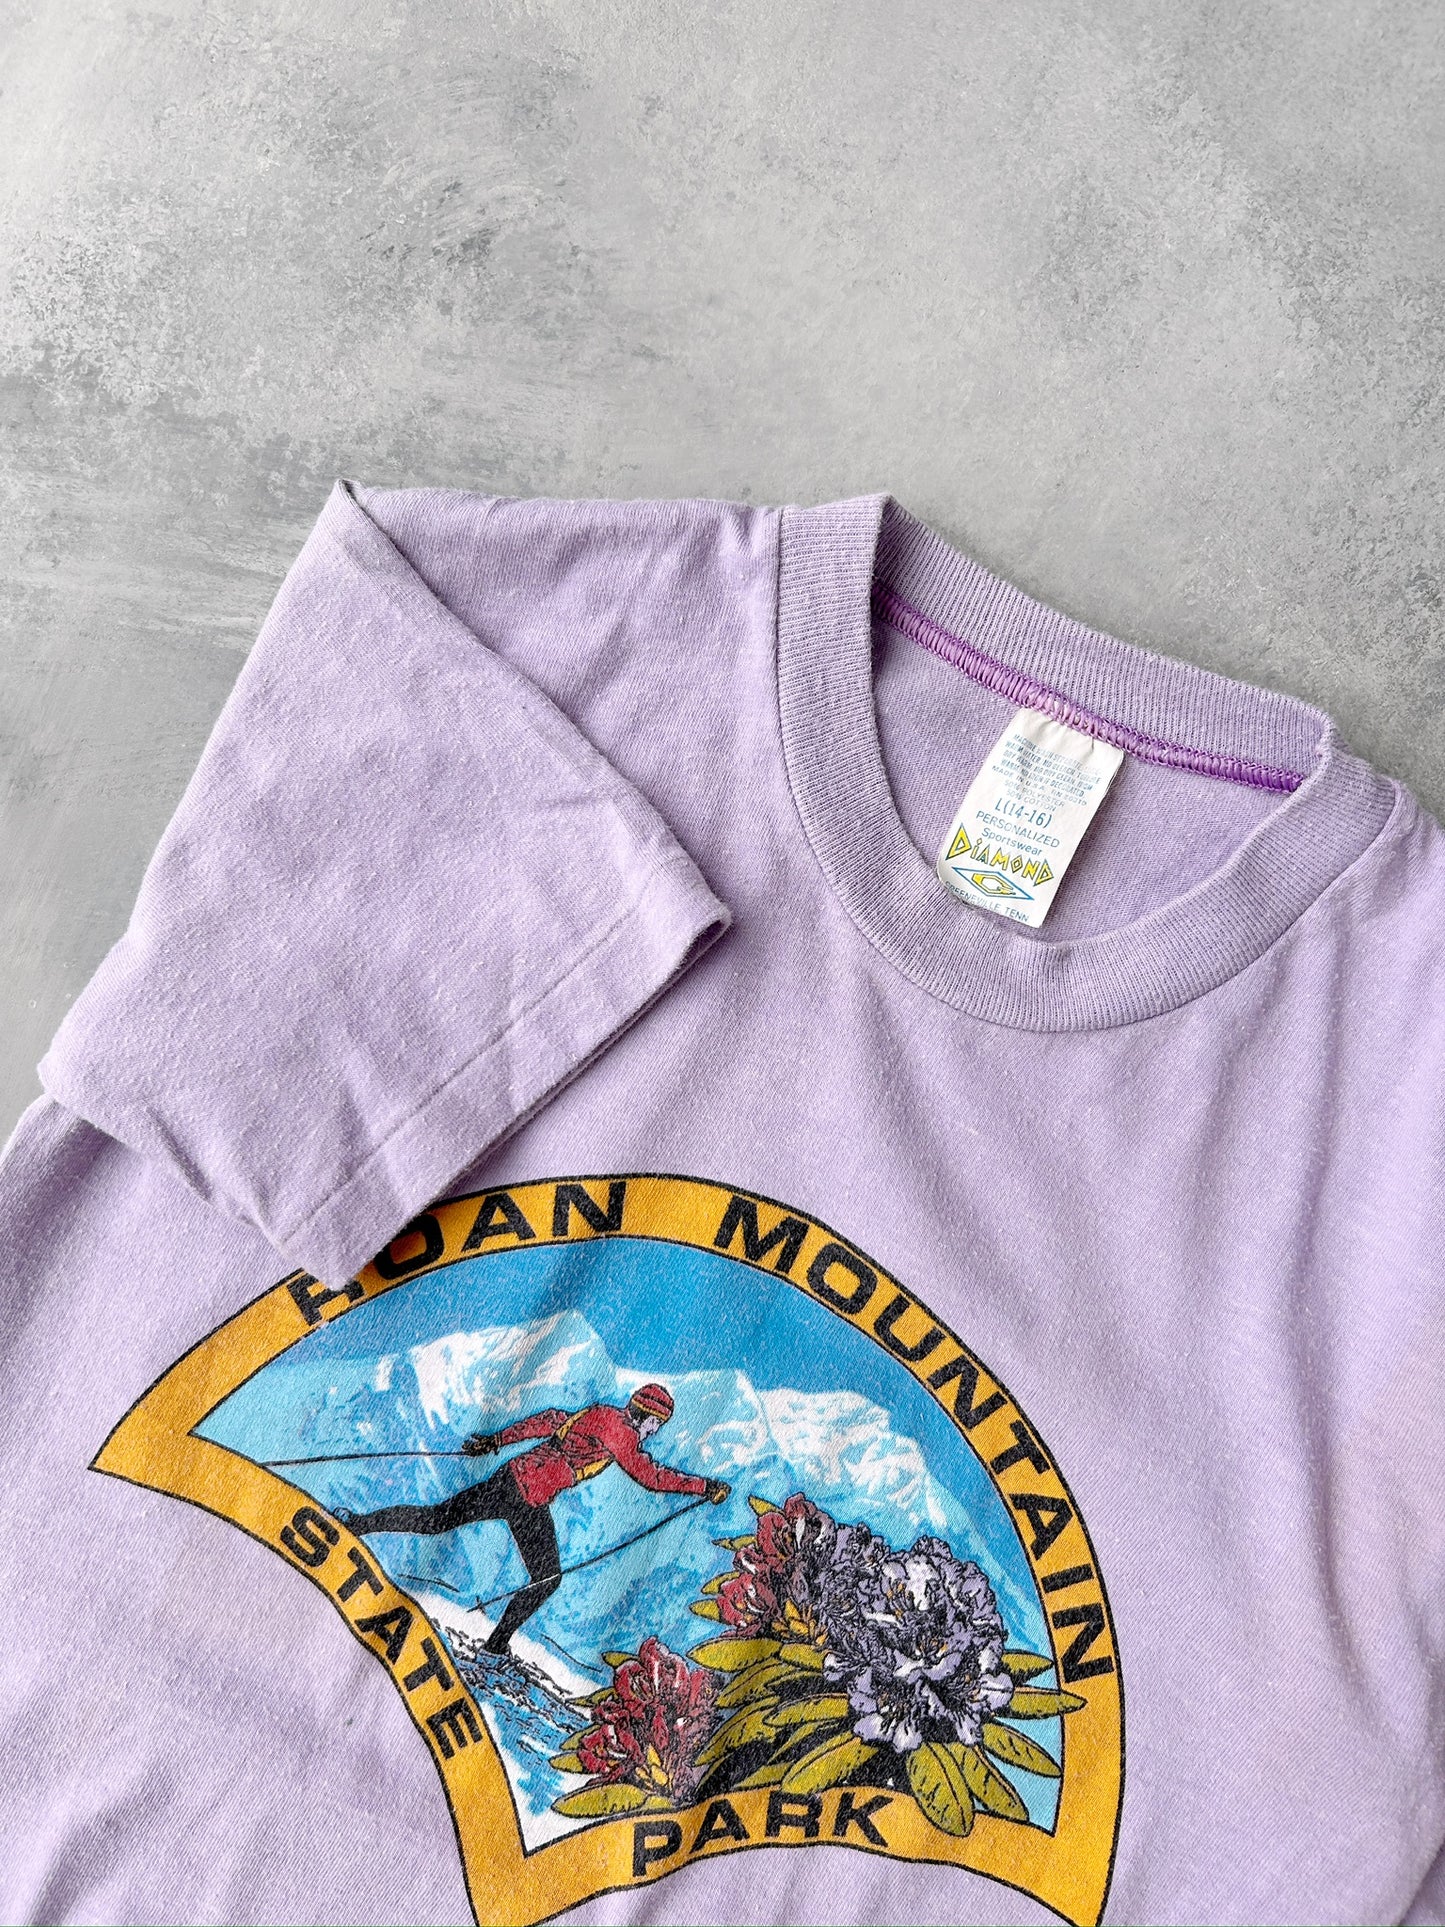 Roan Mountain T-Shirt 80's - XS